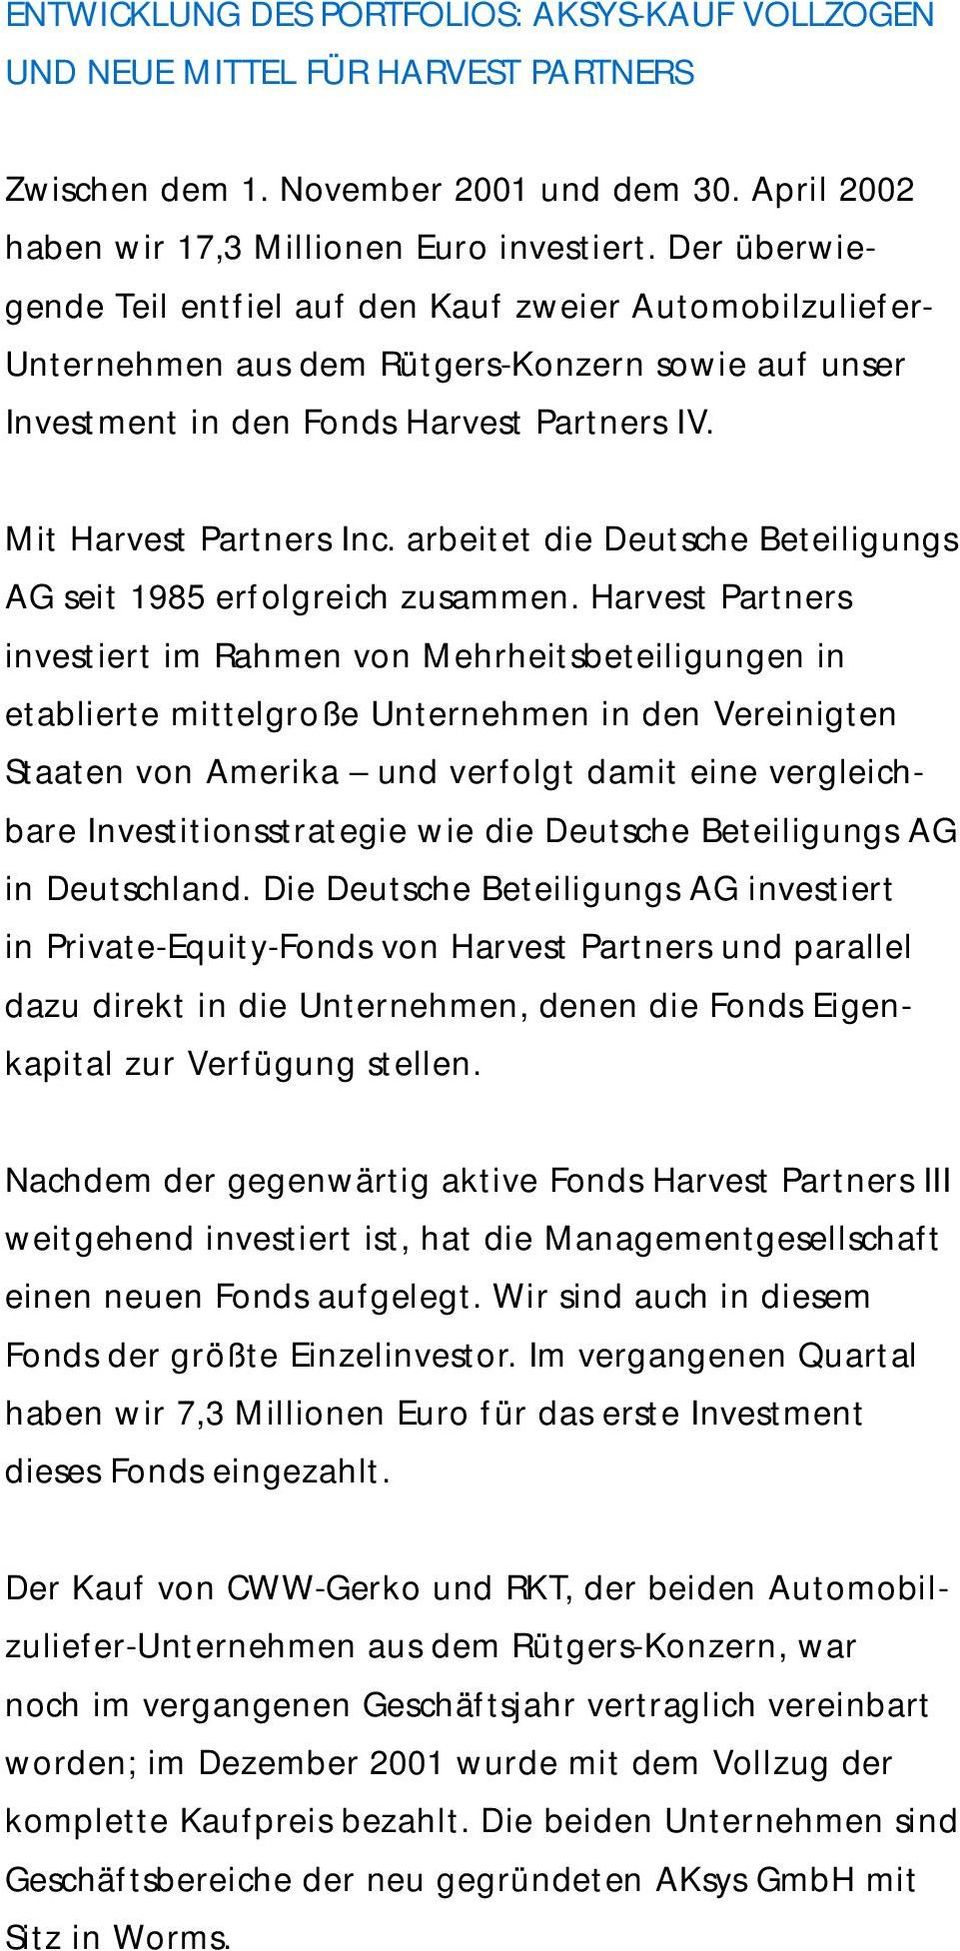 arbeitet die Deutsche Beteiligungs AG seit 1985 erfolgreich zusammen.